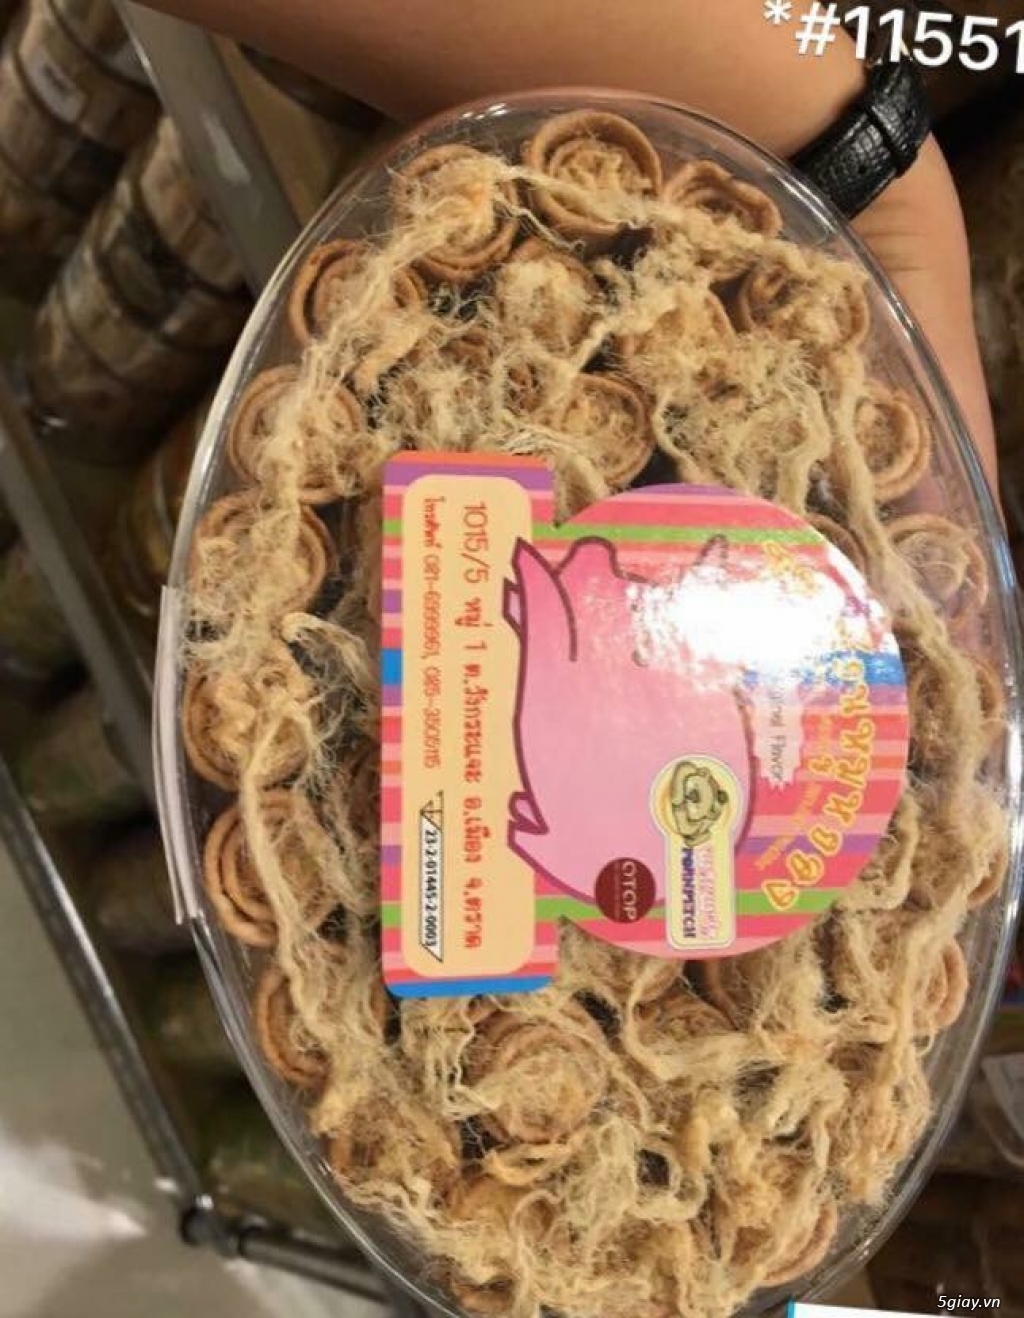 Bánh kẹo Thái Lan đủ món ăn vặt - 29